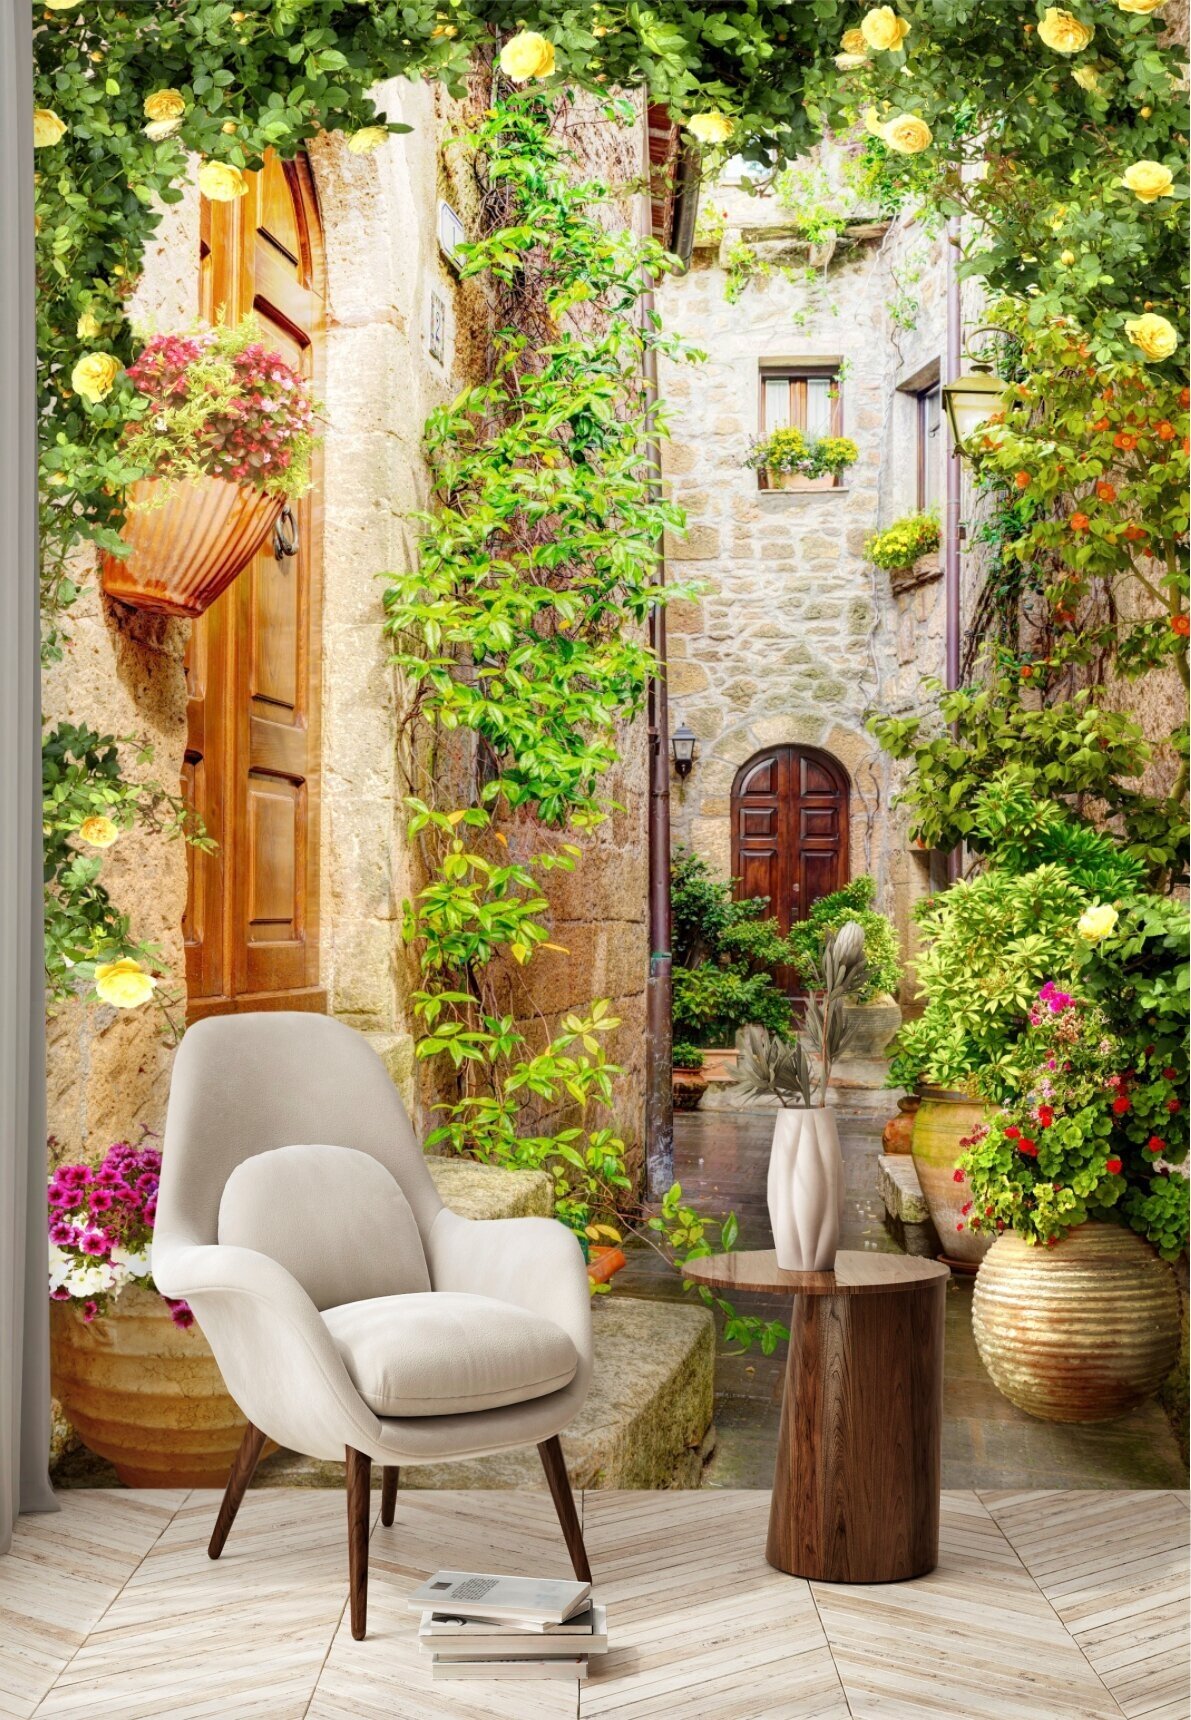 Фотообои "Улочка с цветами в Италии" 200х260 см.